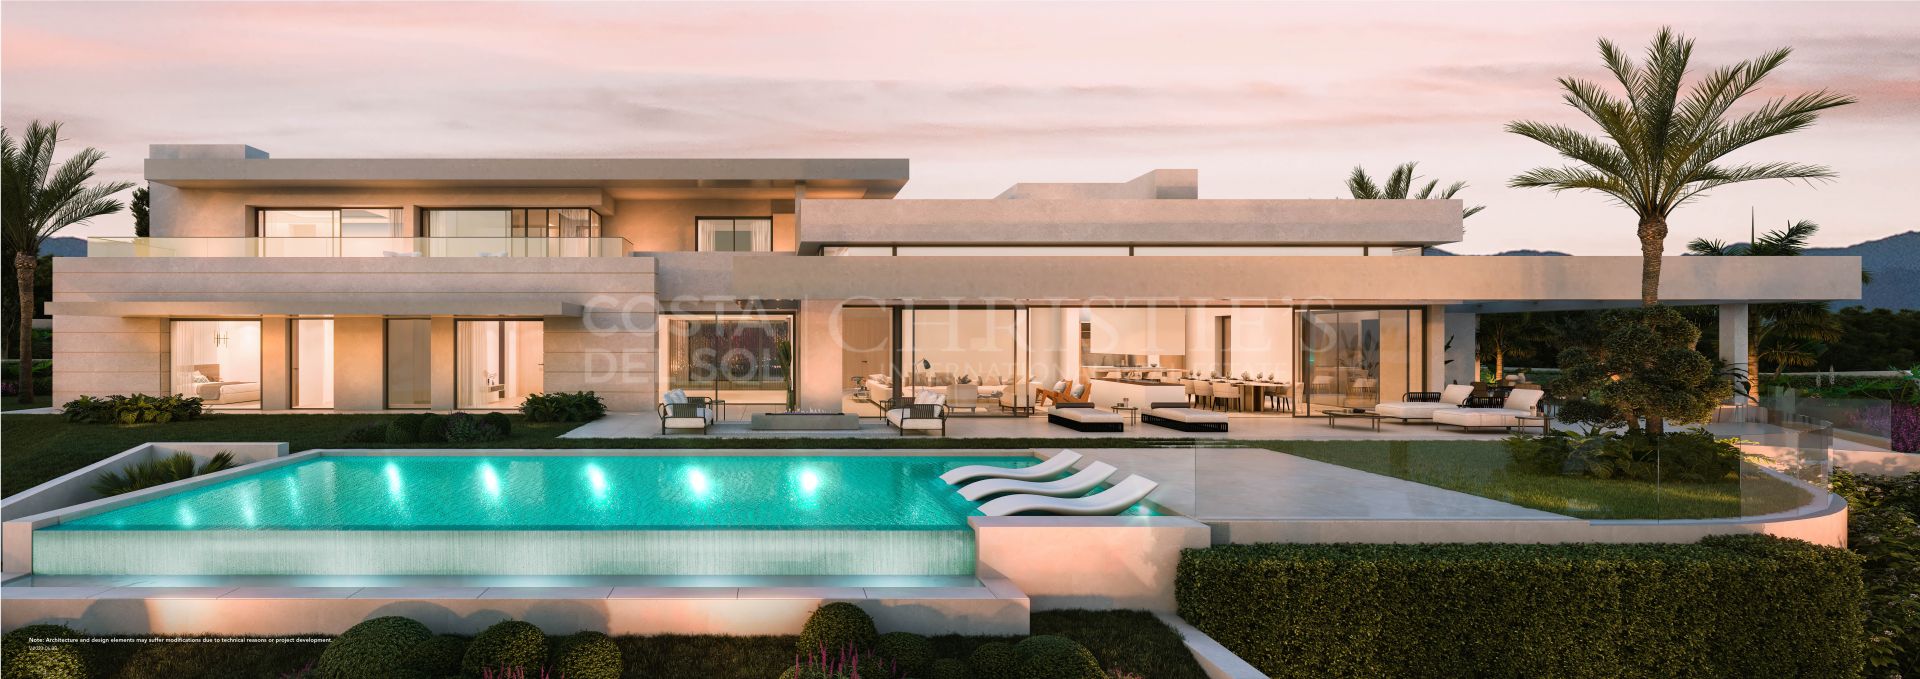 Residencias de lujo basadas en un diseñador internacional, Sierra Blanca, Marbella Golden Mile - Luxury villas with exquisite contemporary design based on an actual designer | Christie’s International Real Estate